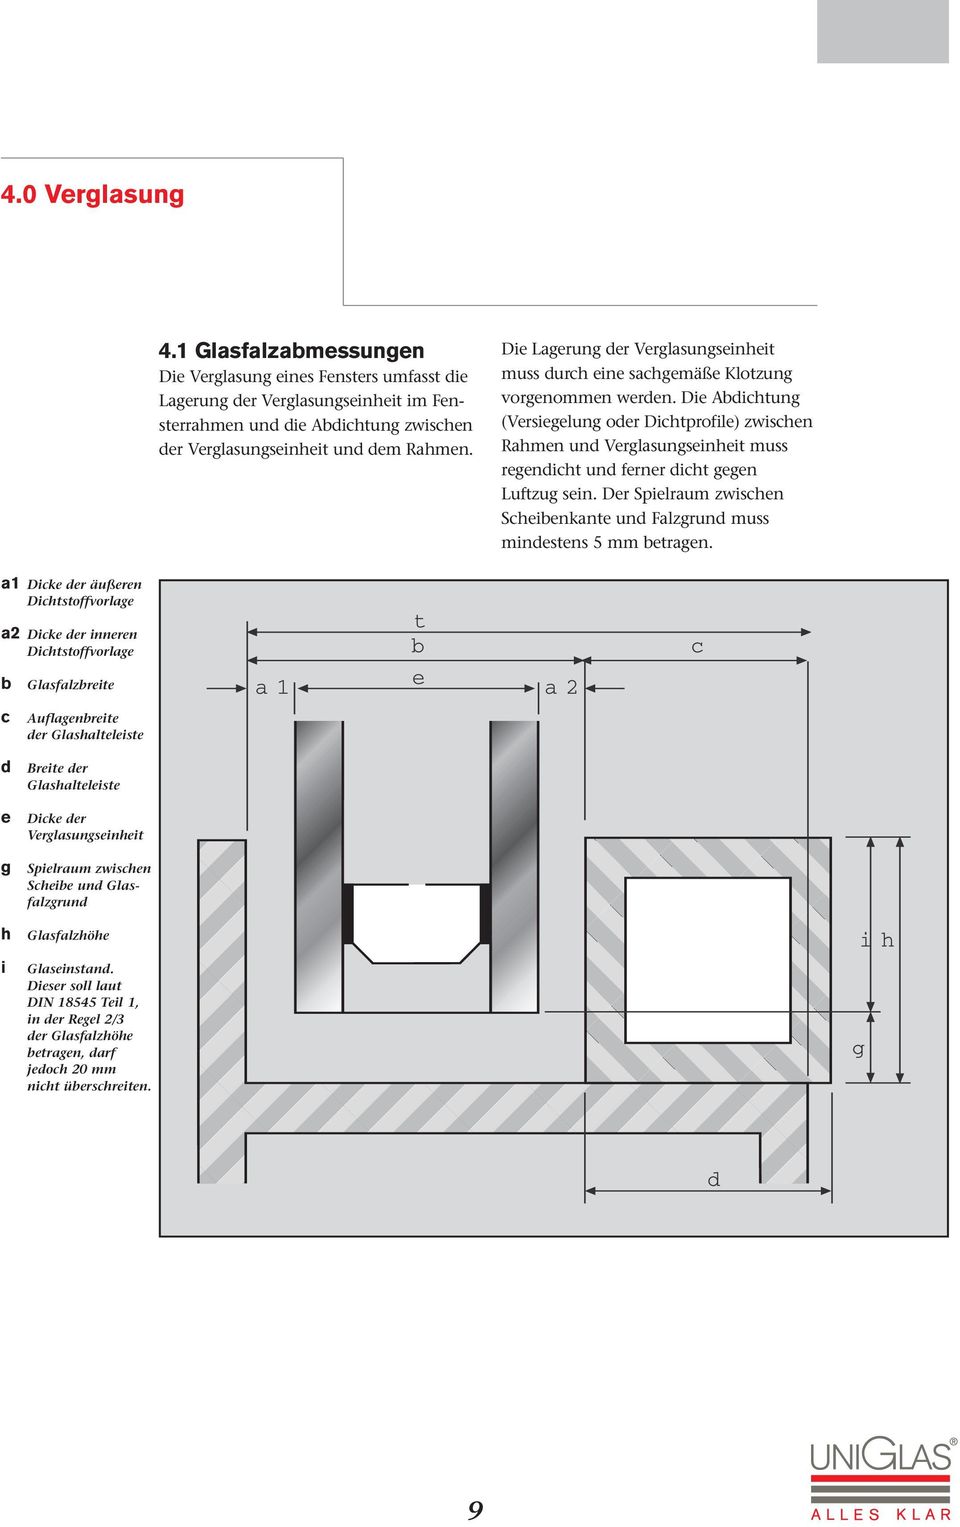 Die Abdichtung (Versiegelung oder Dichtprofile) zwischen Rahmen und Verglasungseinheit muss regendicht und ferner dicht gegen Luftzug sein.